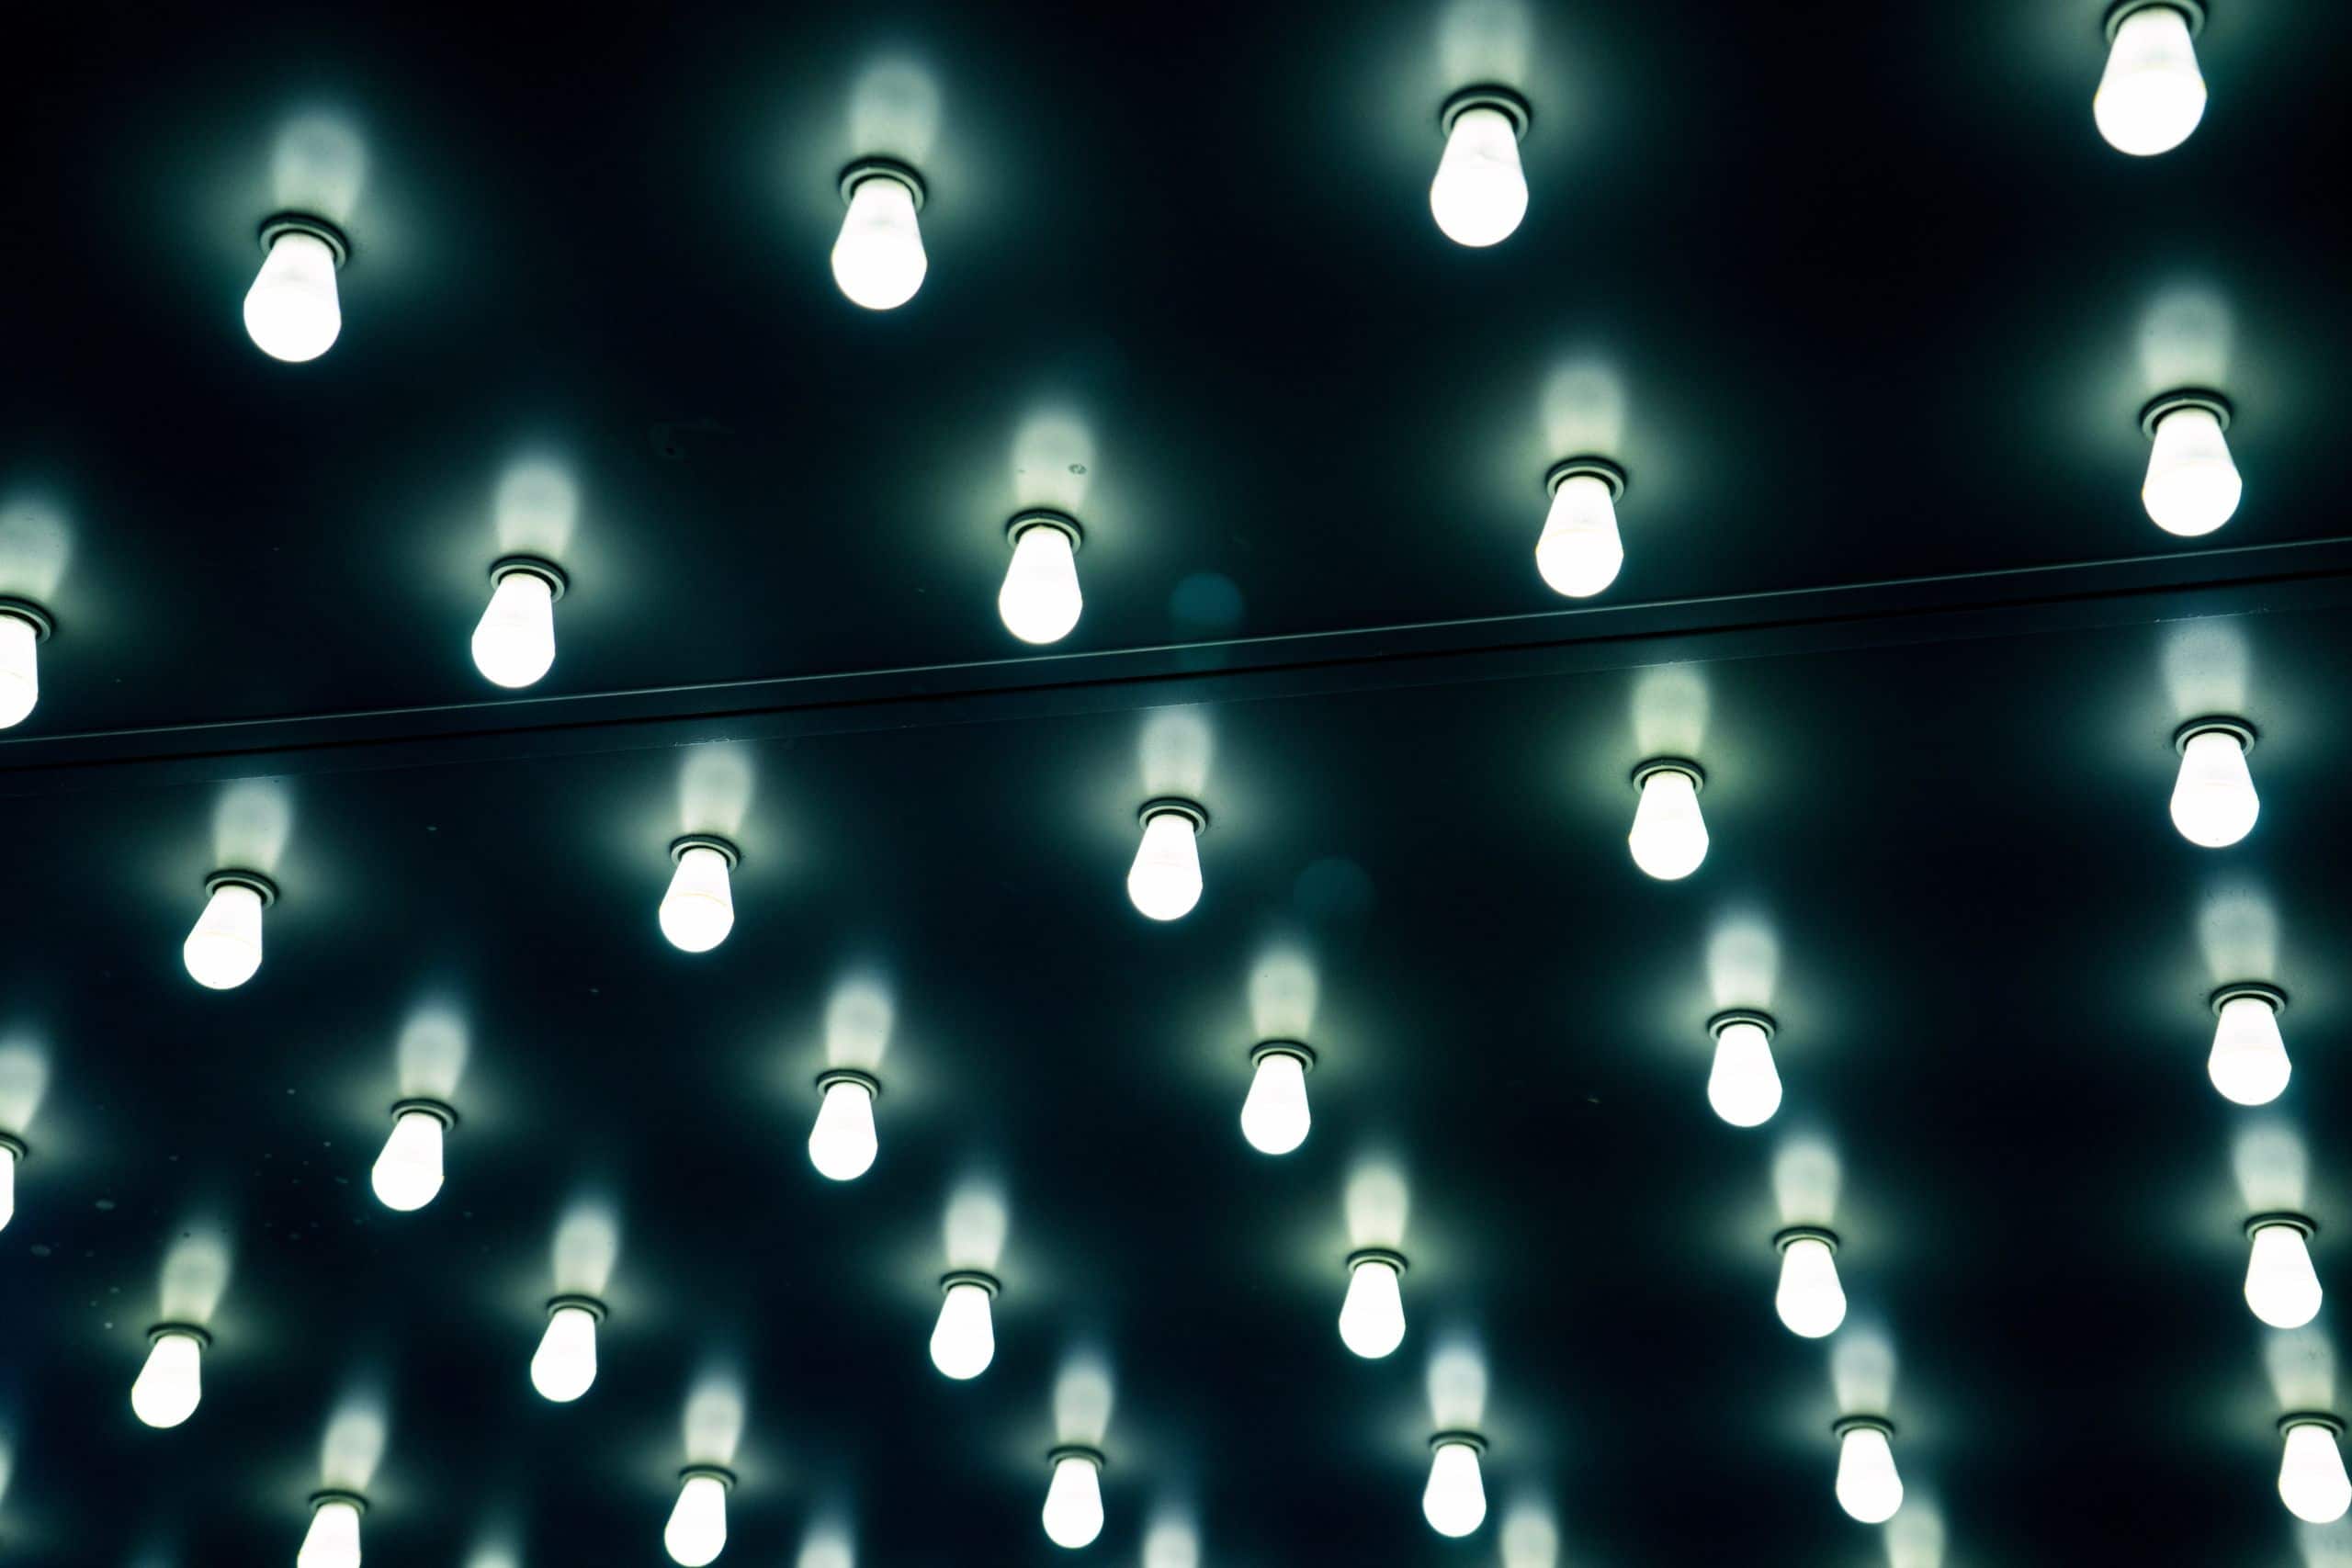 Mercato svizzero dell’illuminazione 2019: la quota di mercato del LED continua a crescere